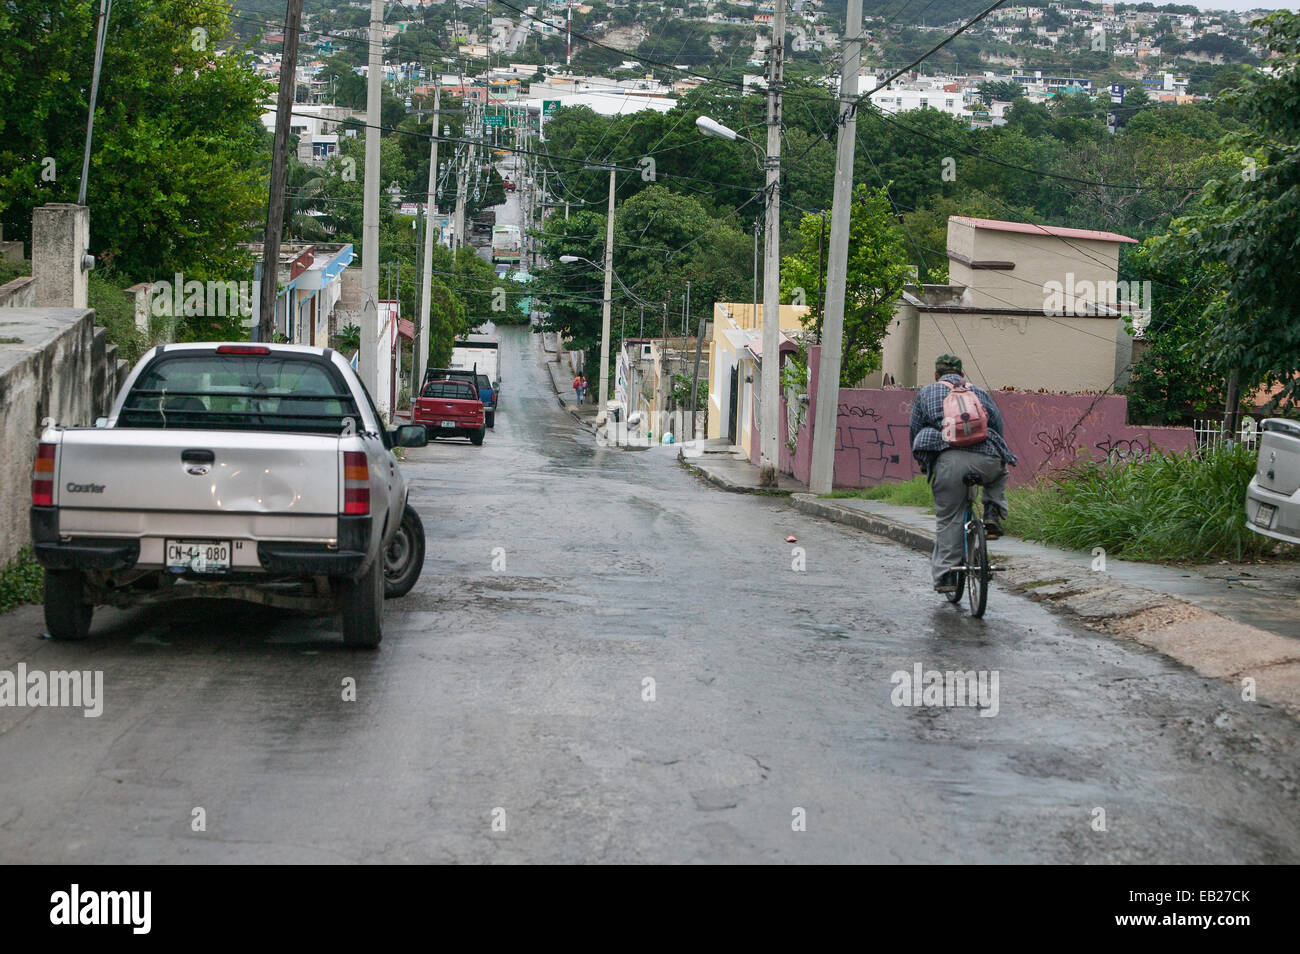 Uomo in bicicletta giù per una lunga strada in un giorno di pioggia in un quartiere nelle colline sopra la città storica di Campeche, Messico. Foto Stock